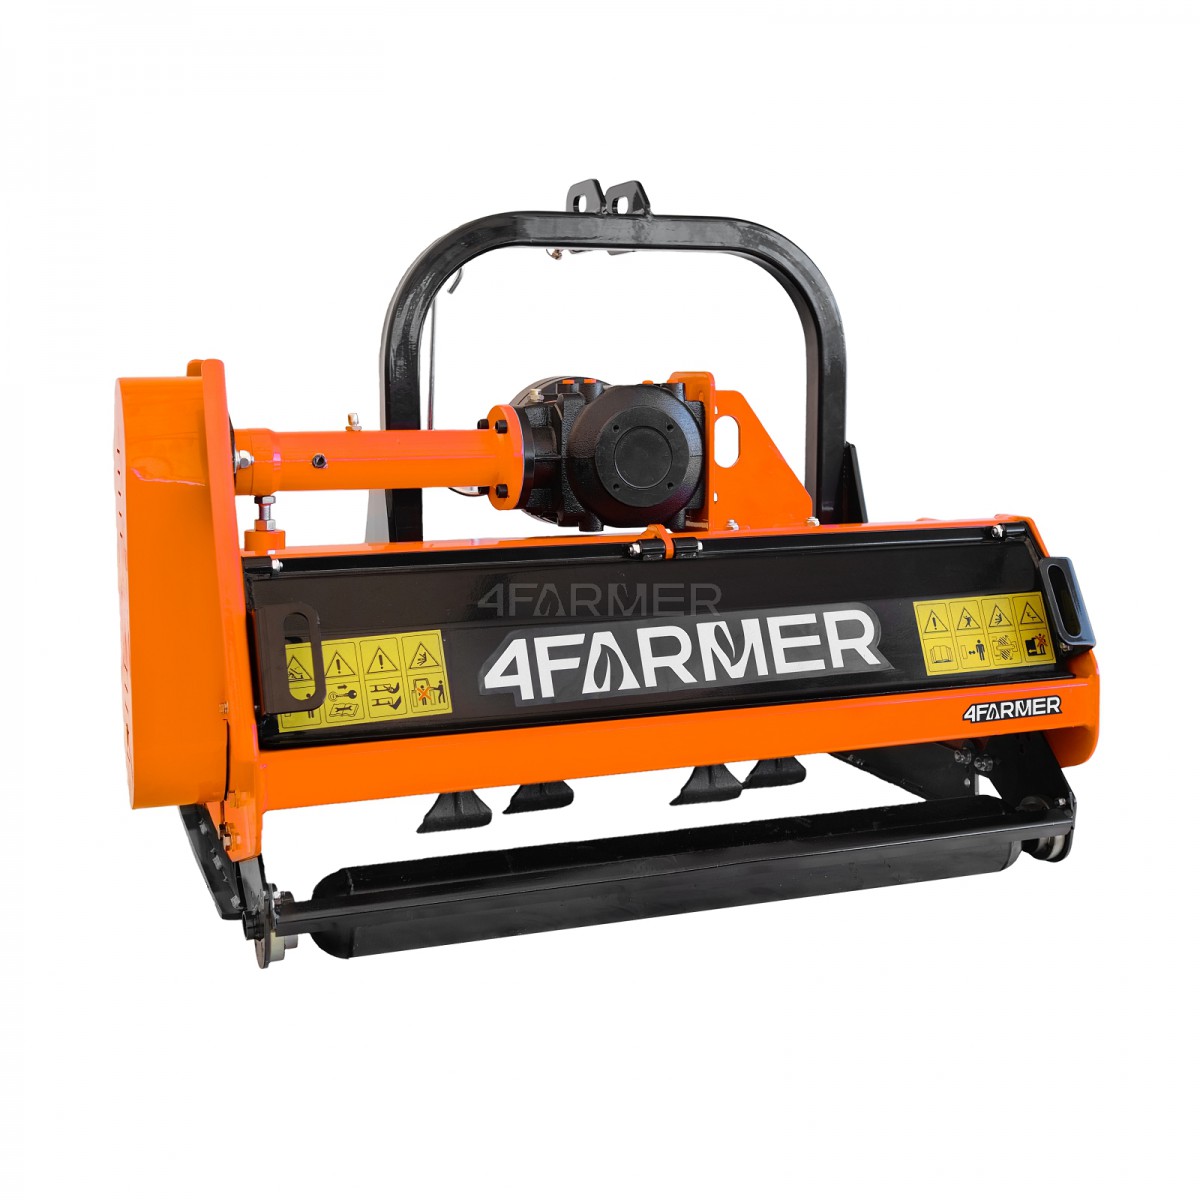 Trituradora de martillos EFGC 105D 4FARMER - naranja